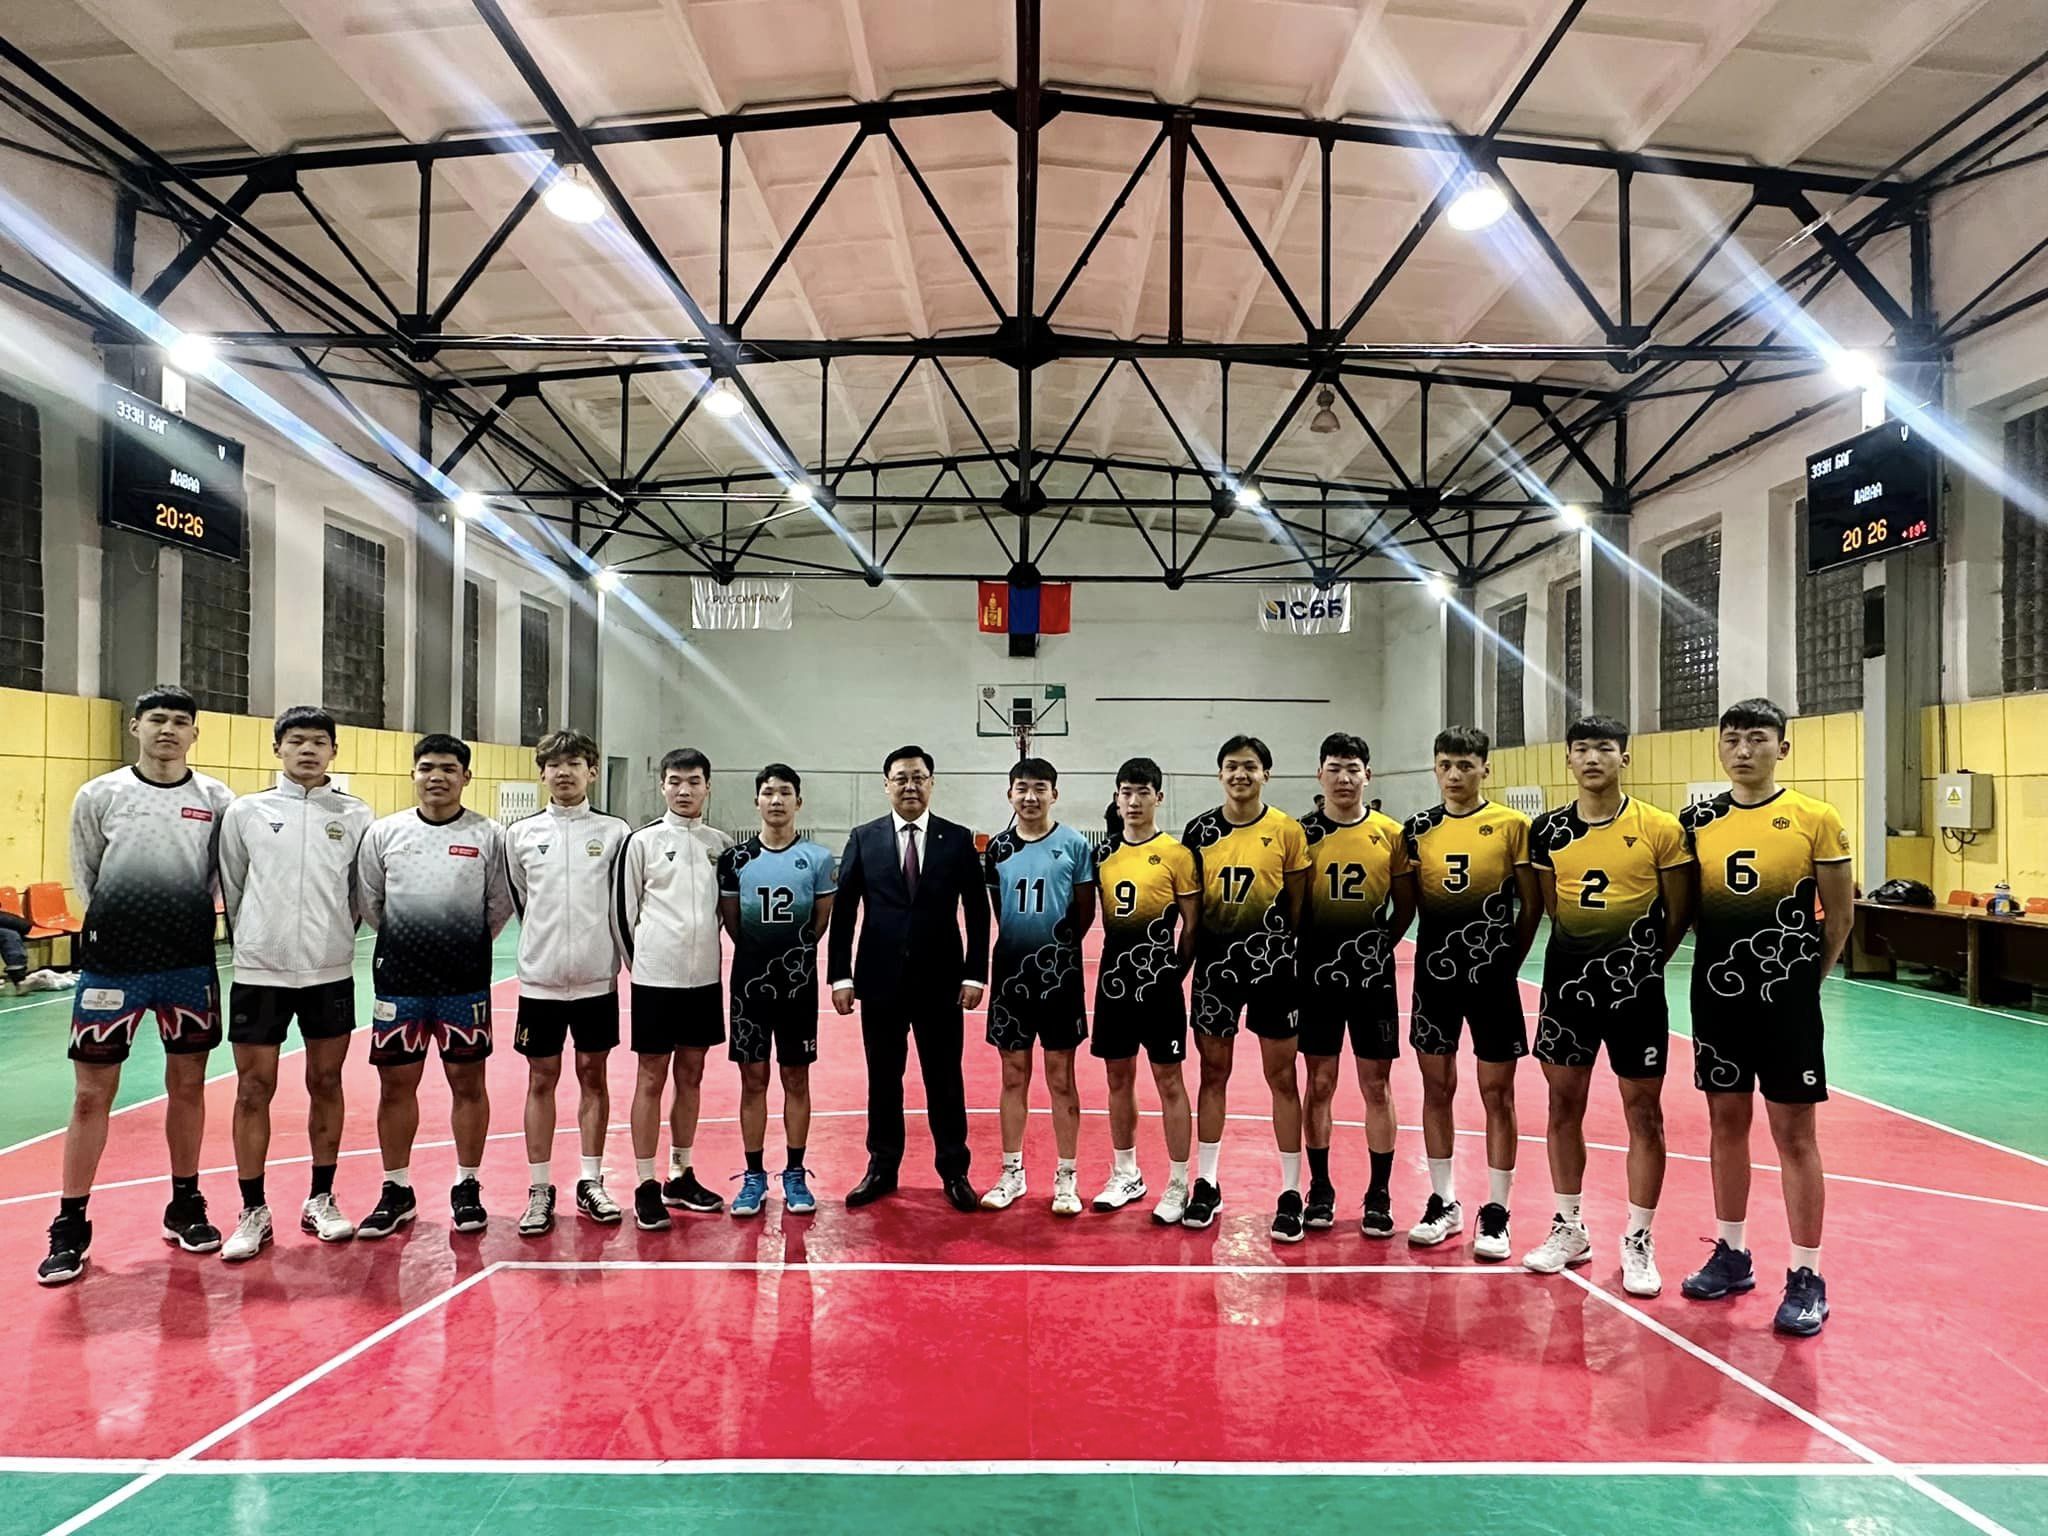 Сэлэнгэ аймгийн волейболын шигшээ багийнхантай уулзлаа